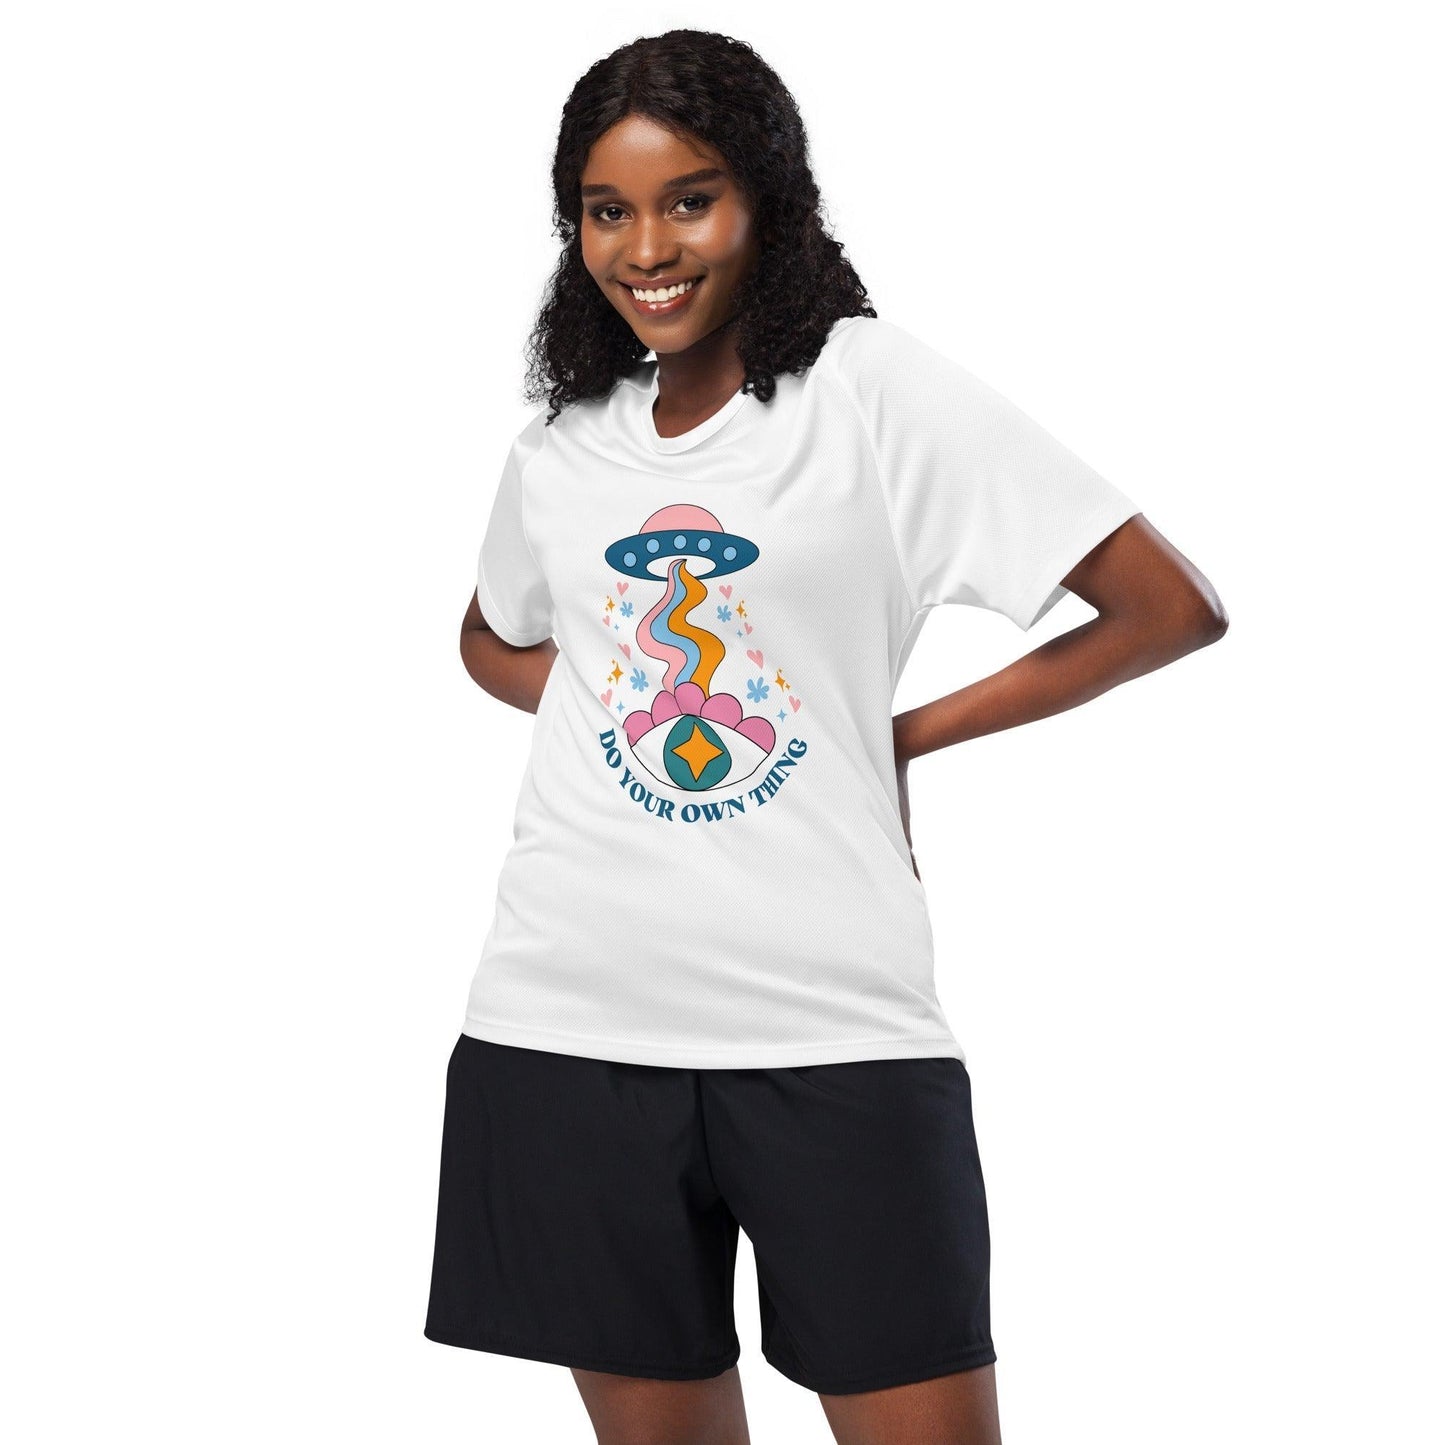 Camiseta deportiva "UniOjo" | ¡La camiseta perfecta para un estilo único y original! - Silvornique